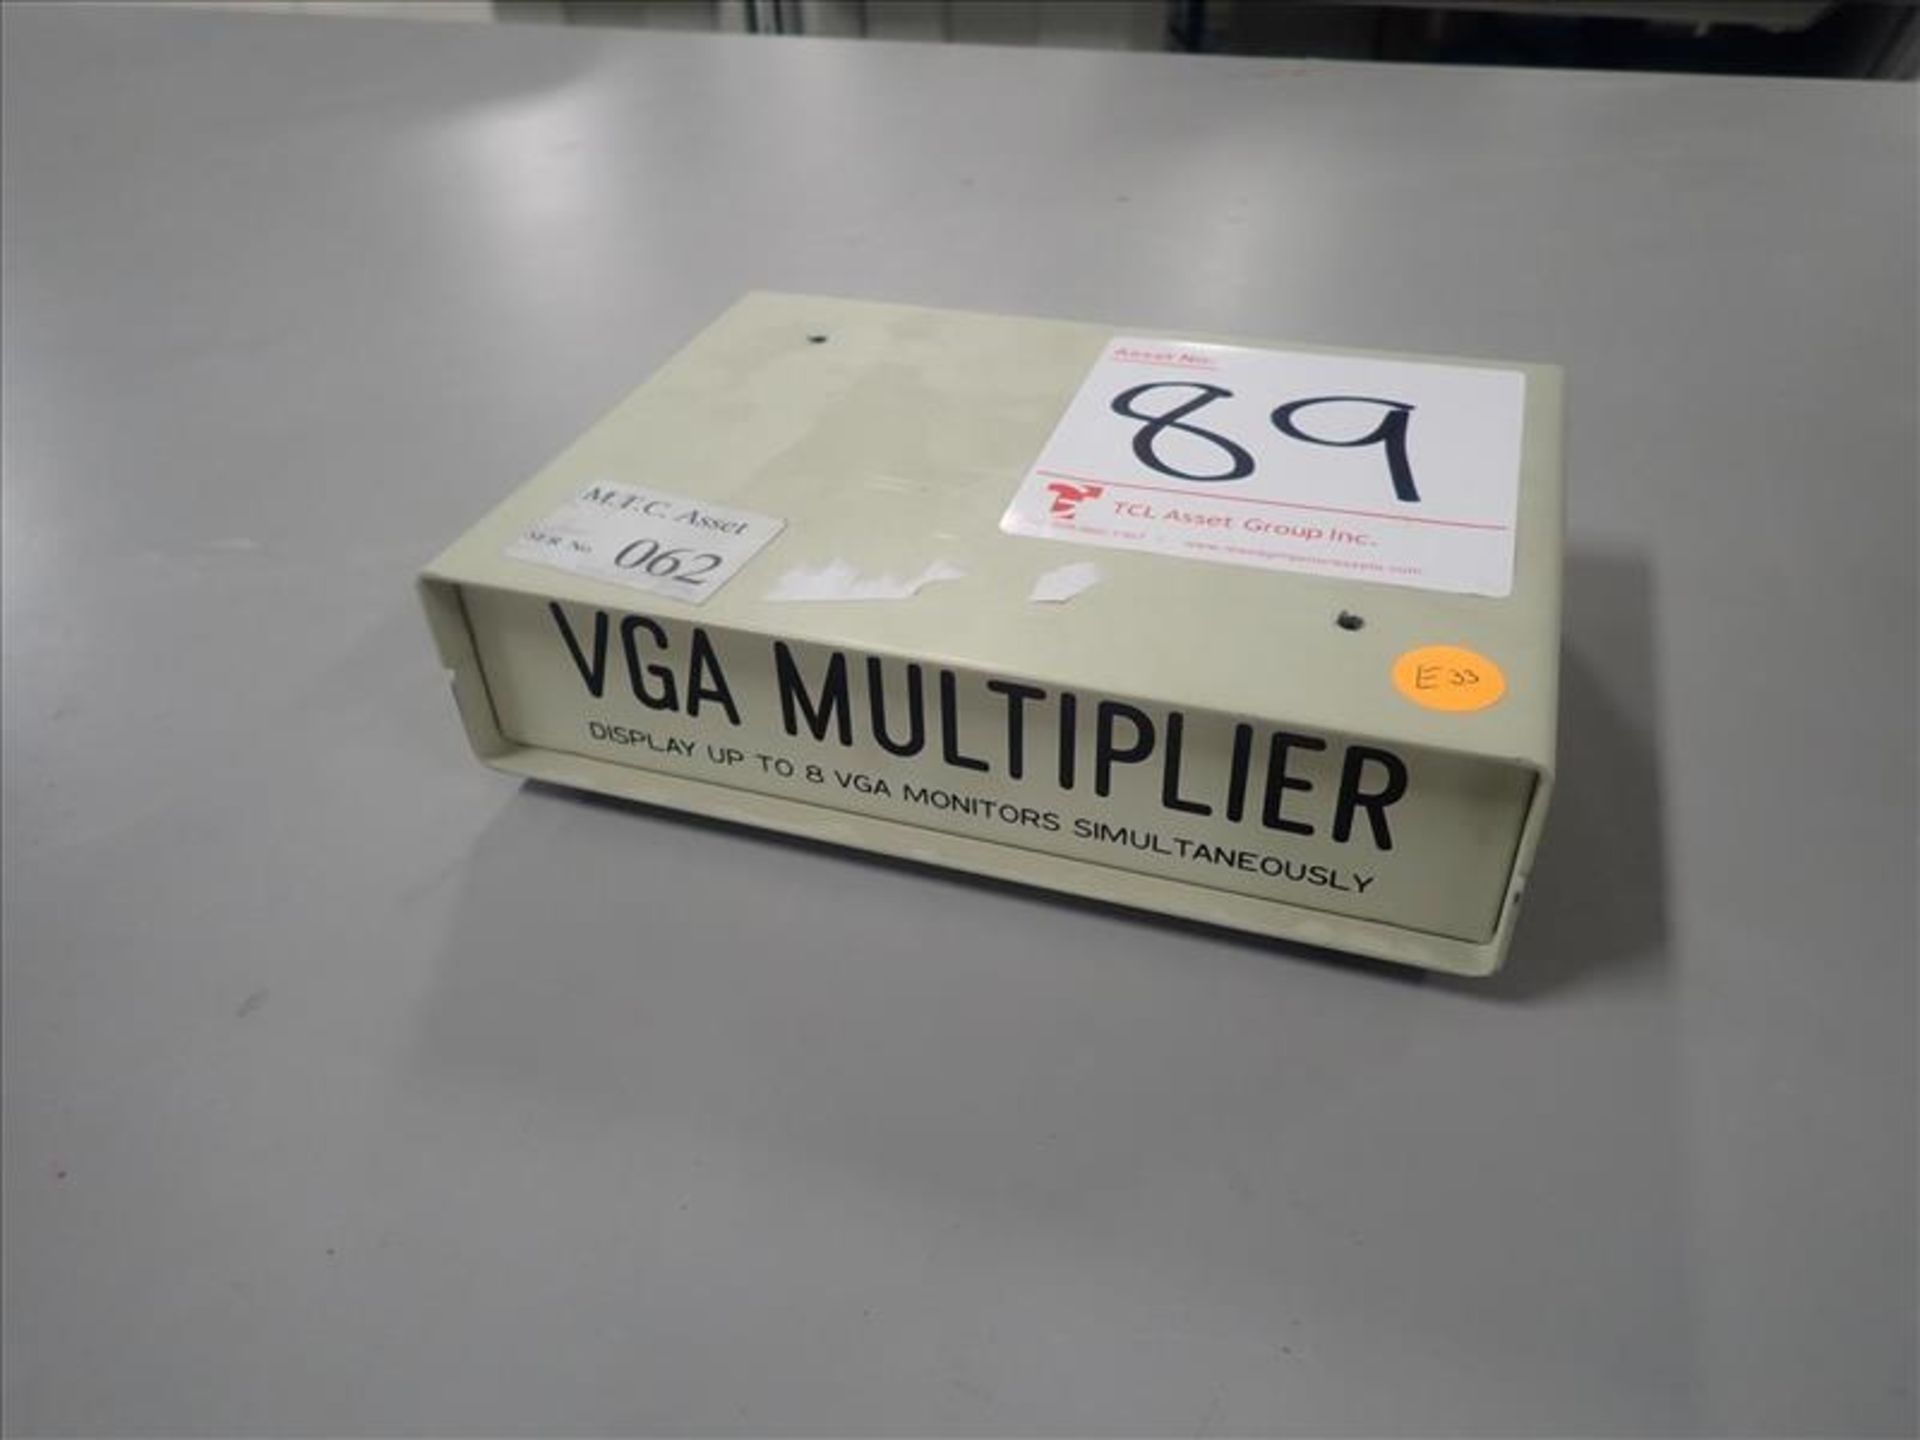 VGA multiplier